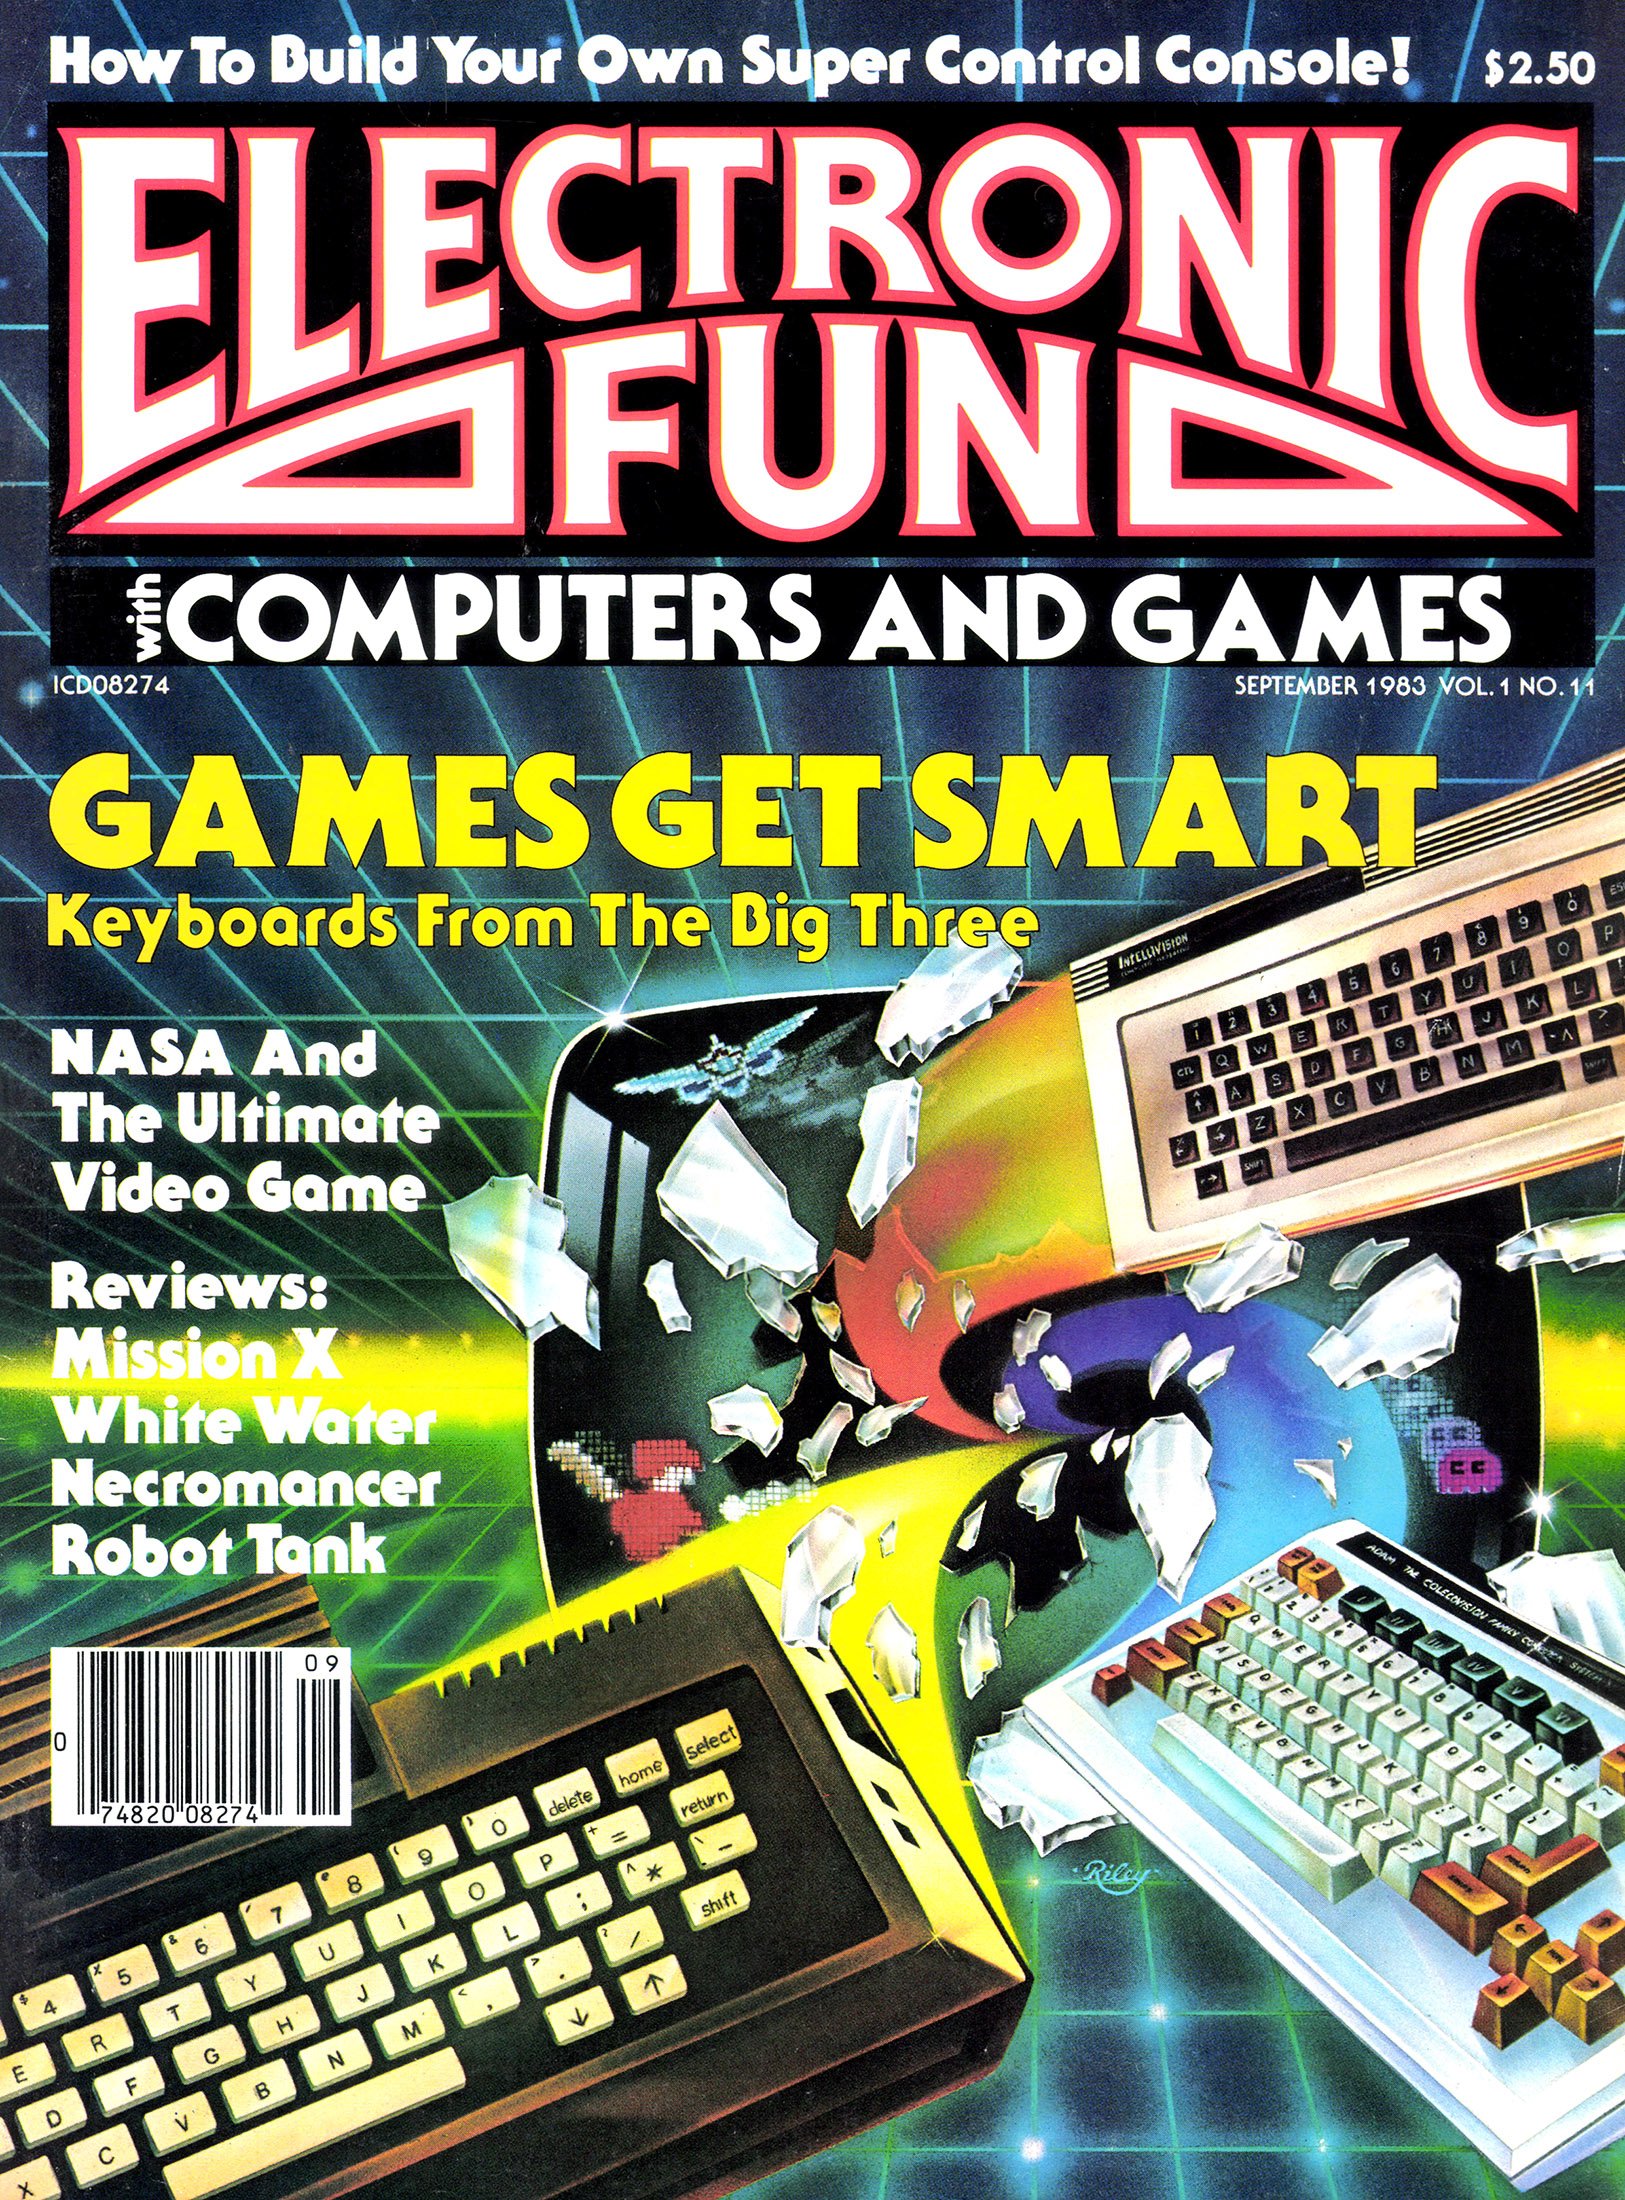 Electronic Fun 011 September 1983